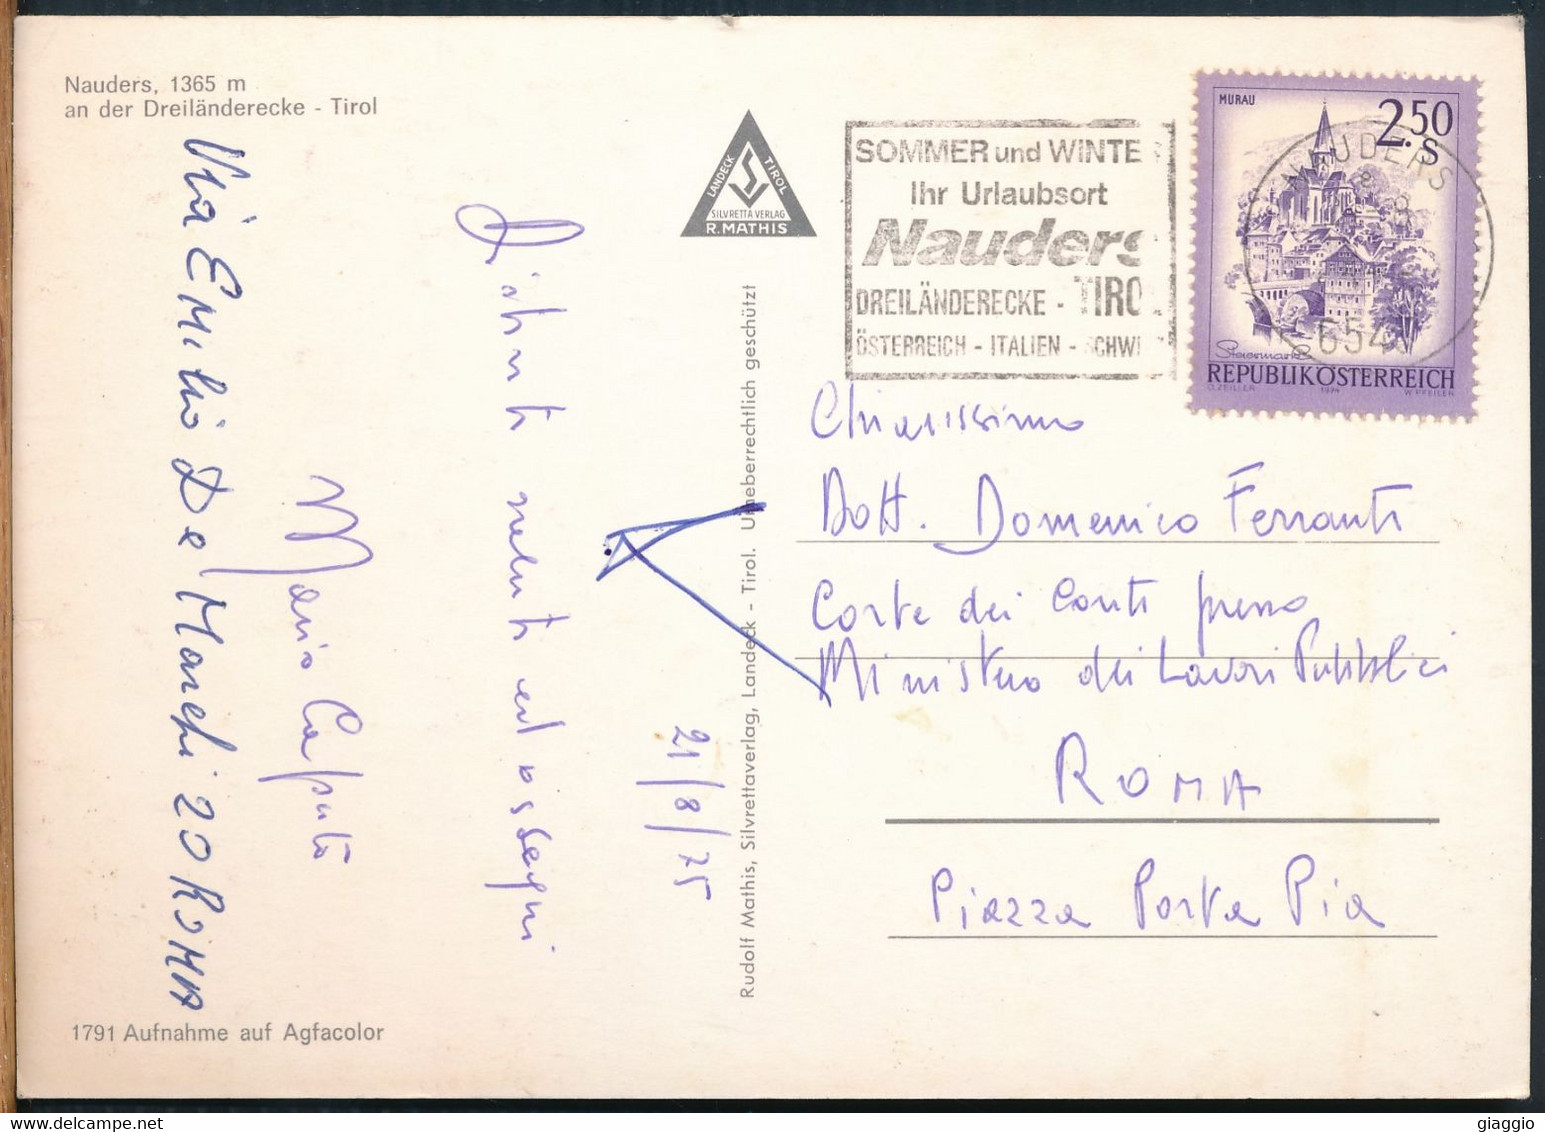 °°° 25697 - AUSTRIA - NAUDERS AN DER DREILANDERECKE - 1975 With Stamps °°° - Nauders